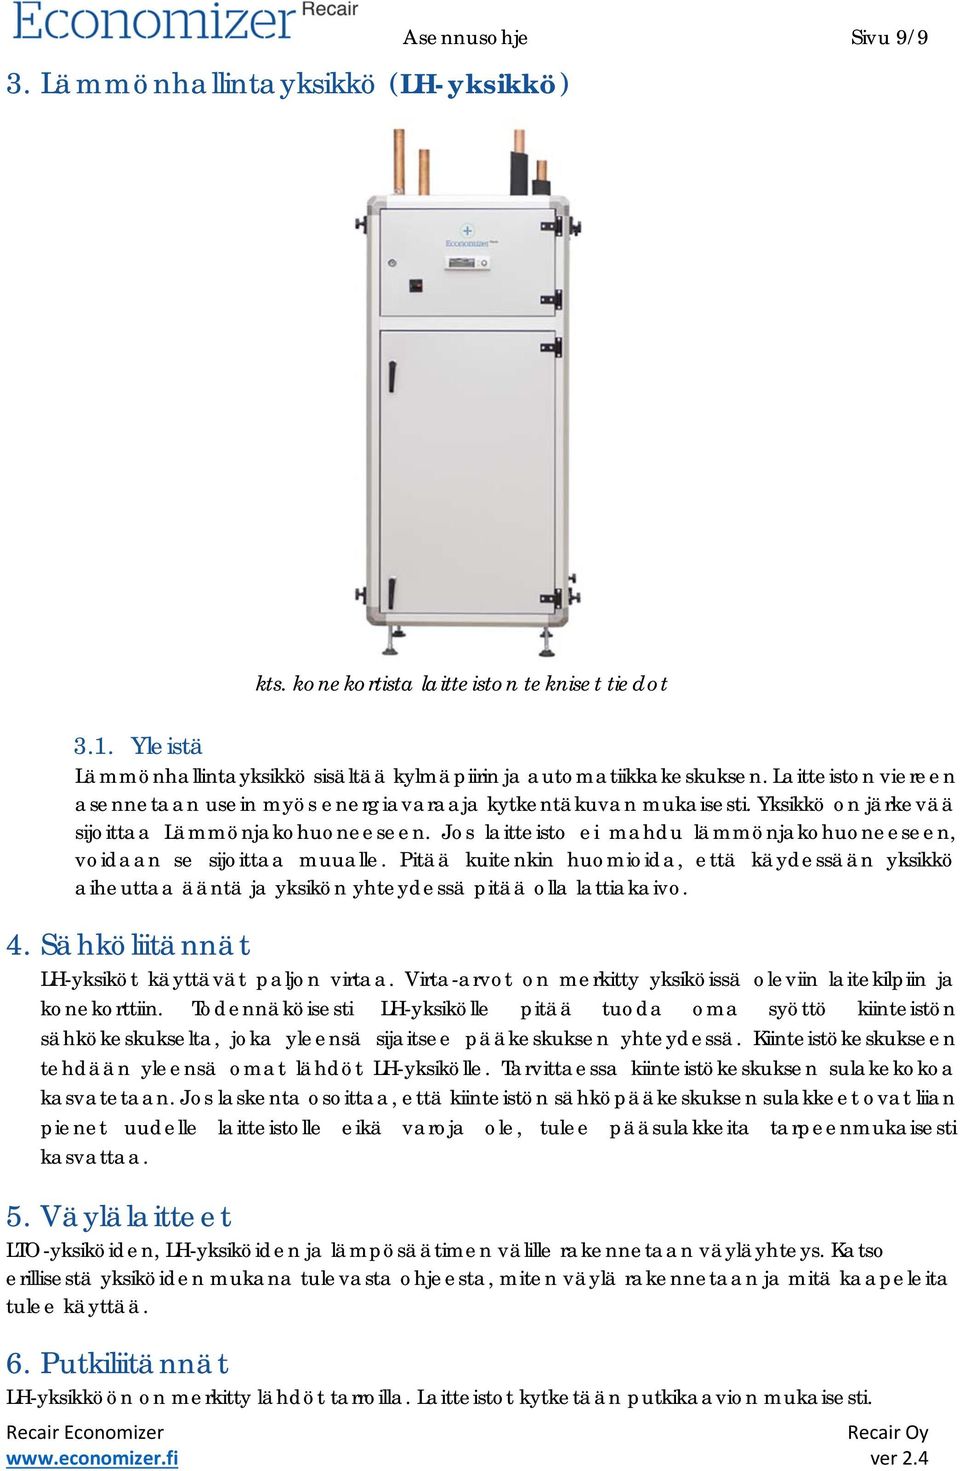 Jos laitteisto ei mahdu lämmönjakohuoneeseen, voidaan se sijoittaa muualle. Pitää kuitenkin huomioida, että käydessään yksikkö aiheuttaa ääntä ja yksikön yhteydessä pitää olla lattiakaivo. 4.